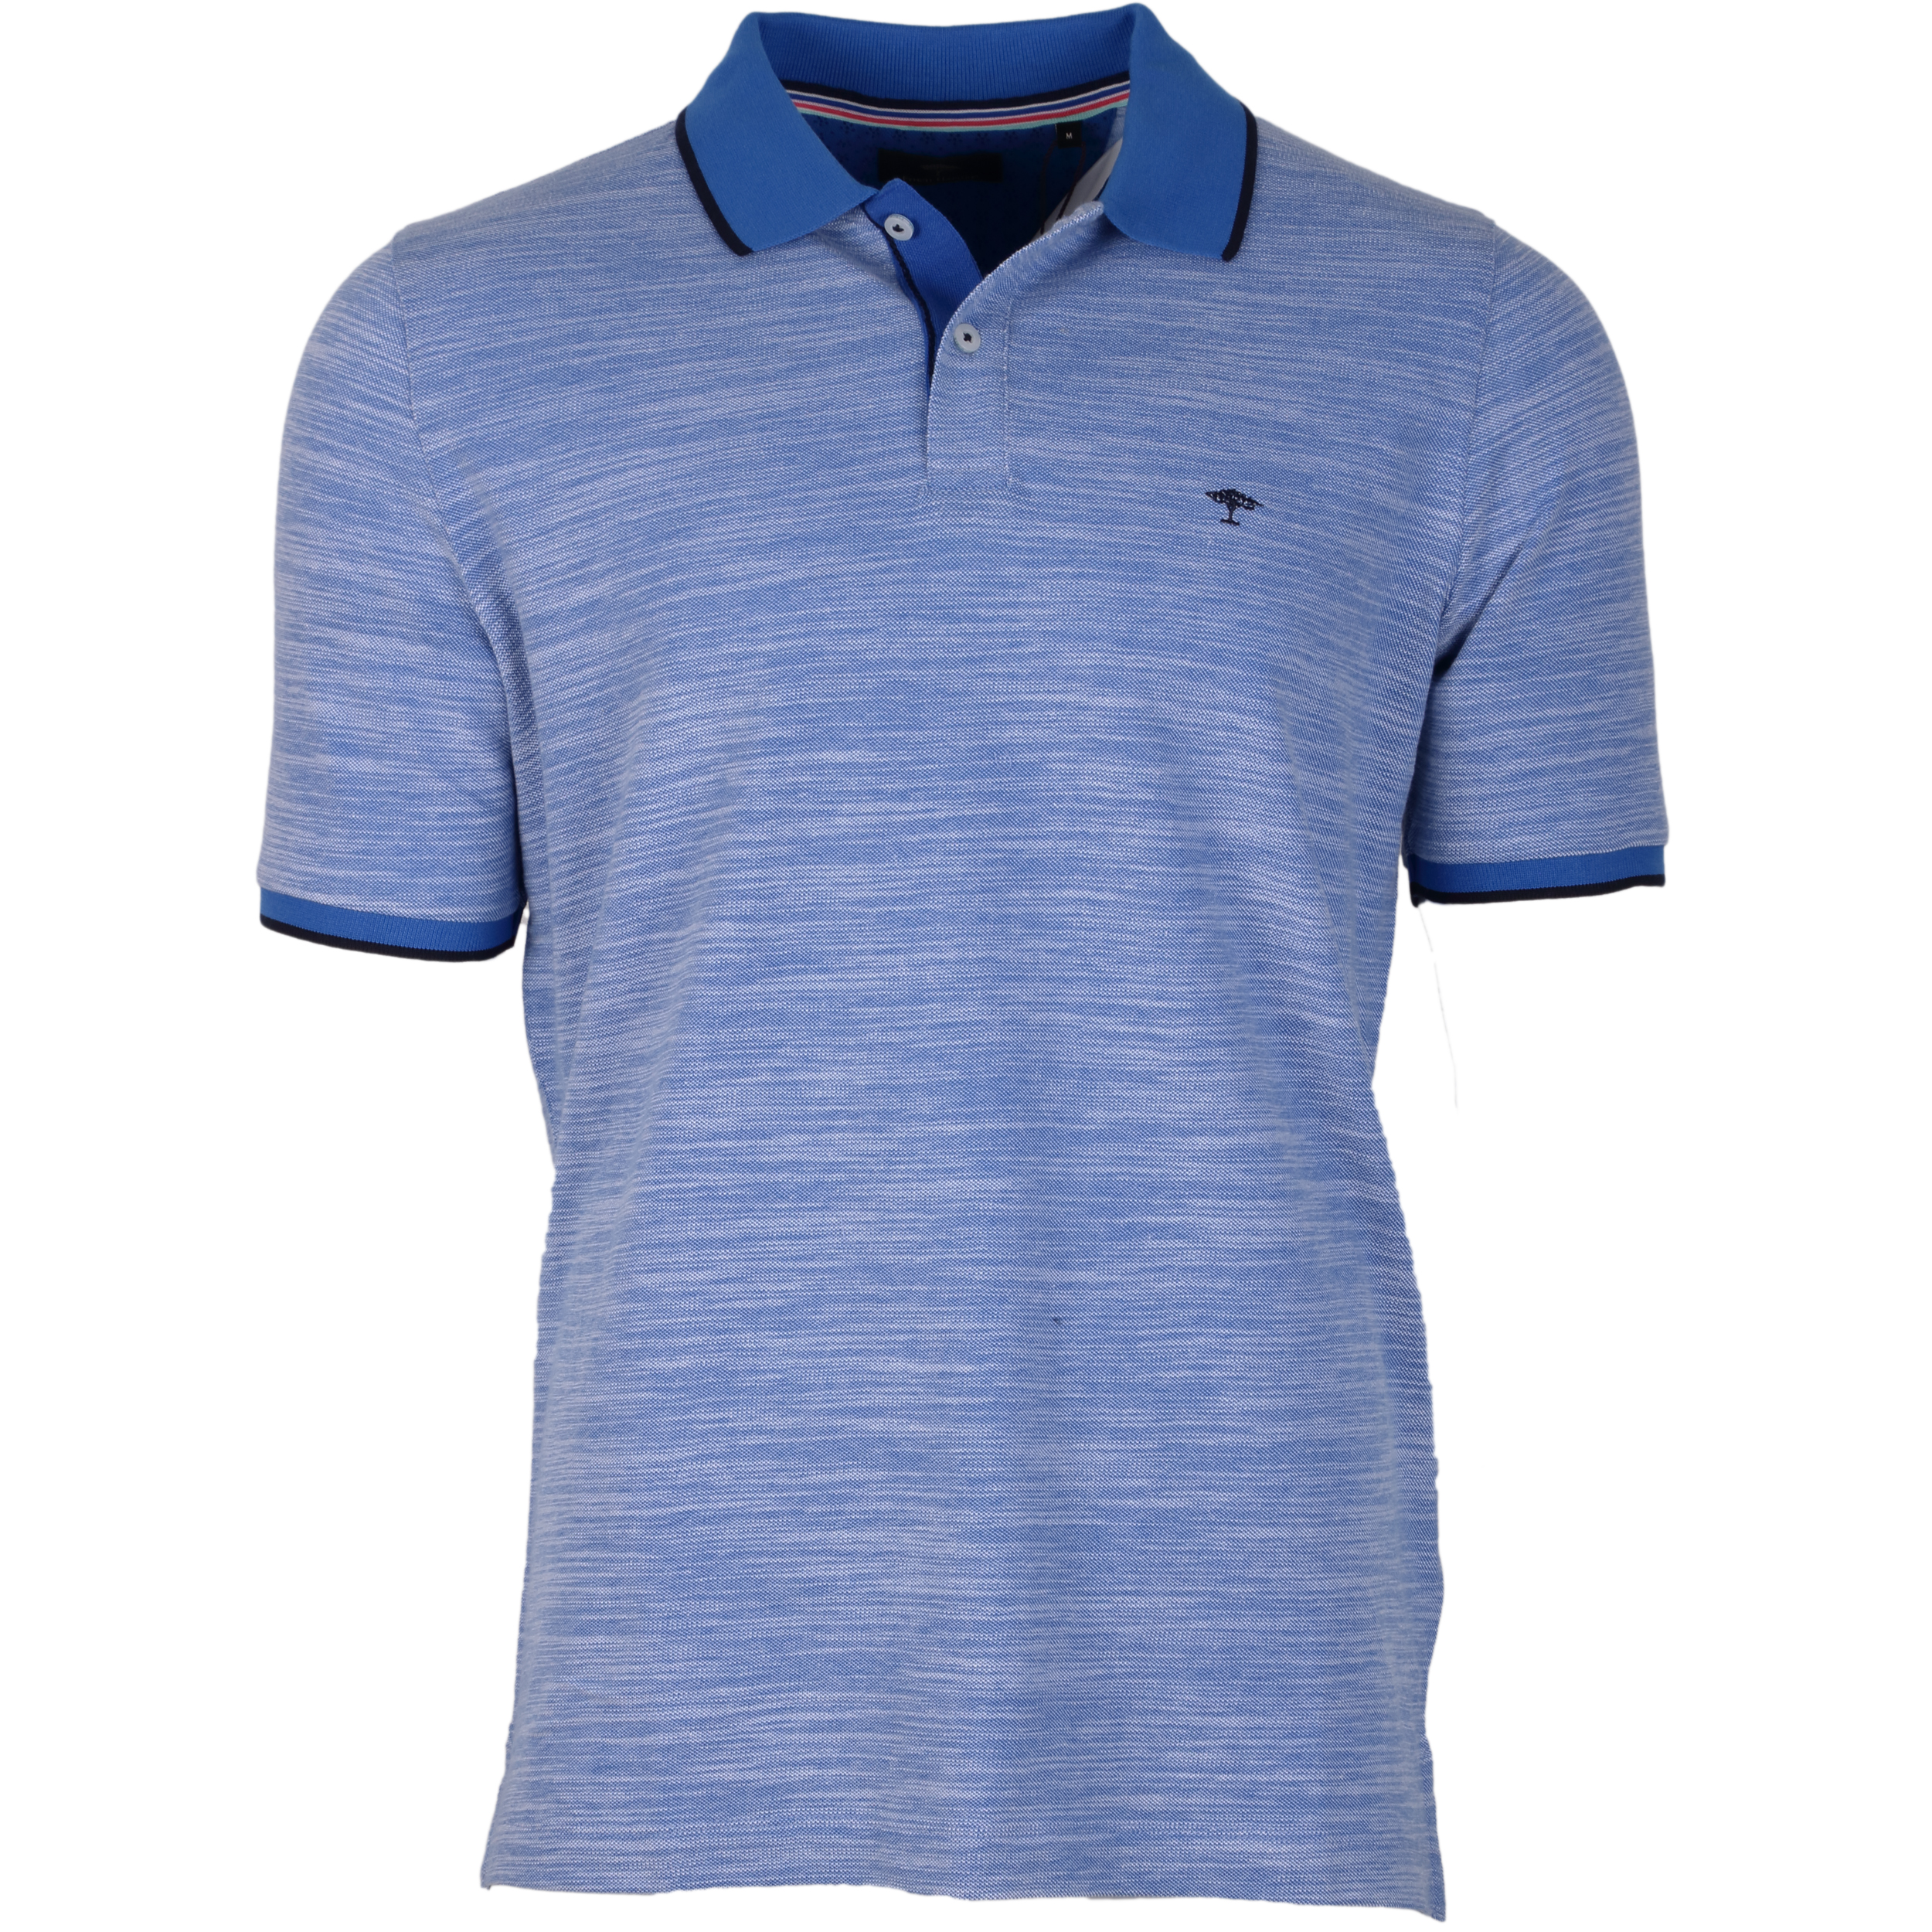 Fynch-Hatton Poloshirt 2-Tone L blau